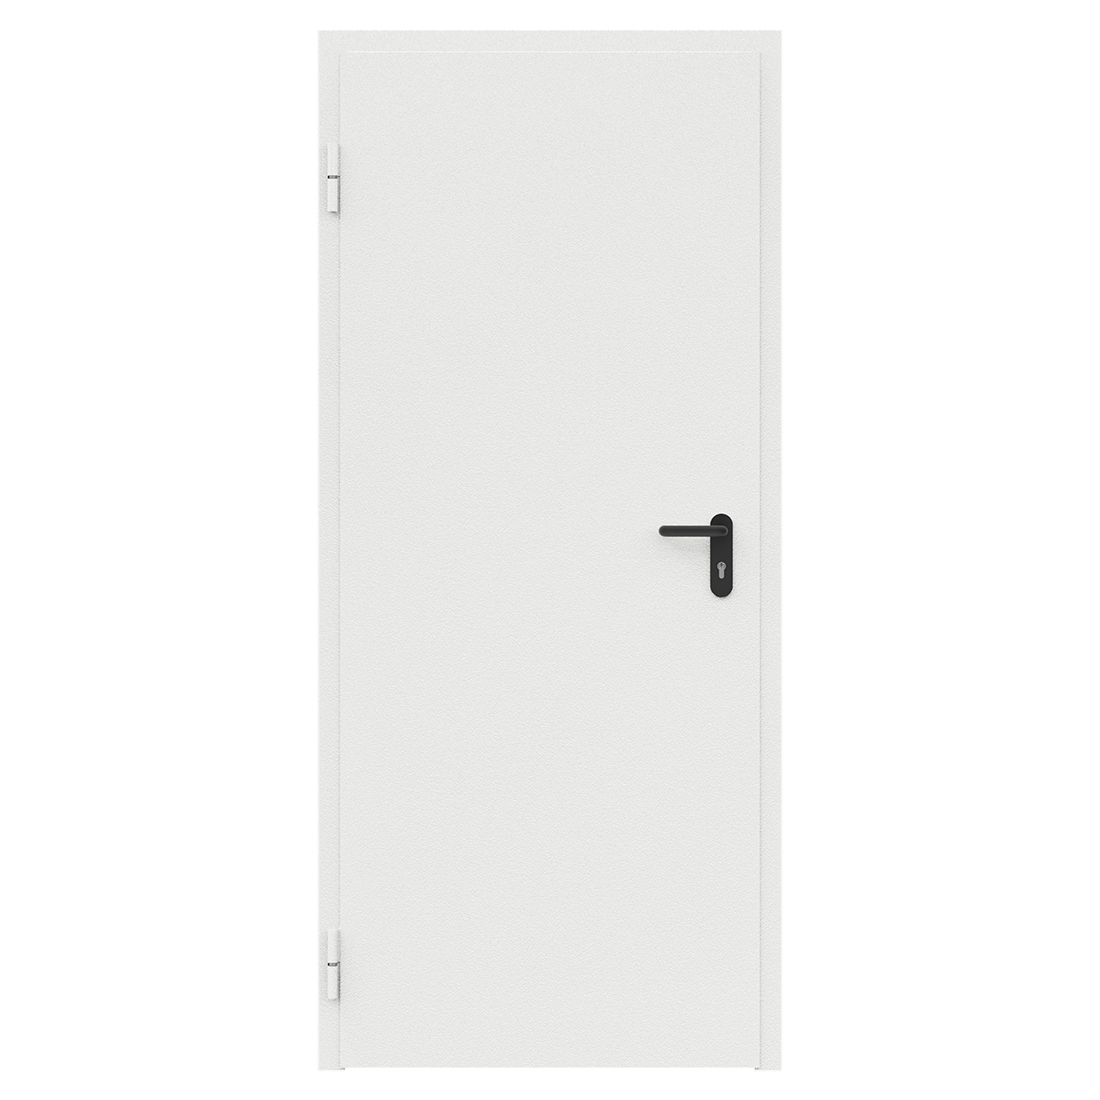 Дверь противопожарная металлическая ДПМ-Пульс-01/30К (EI 30) сплошная, угловая коробка (850х2075), без порога, левая, RAL9016